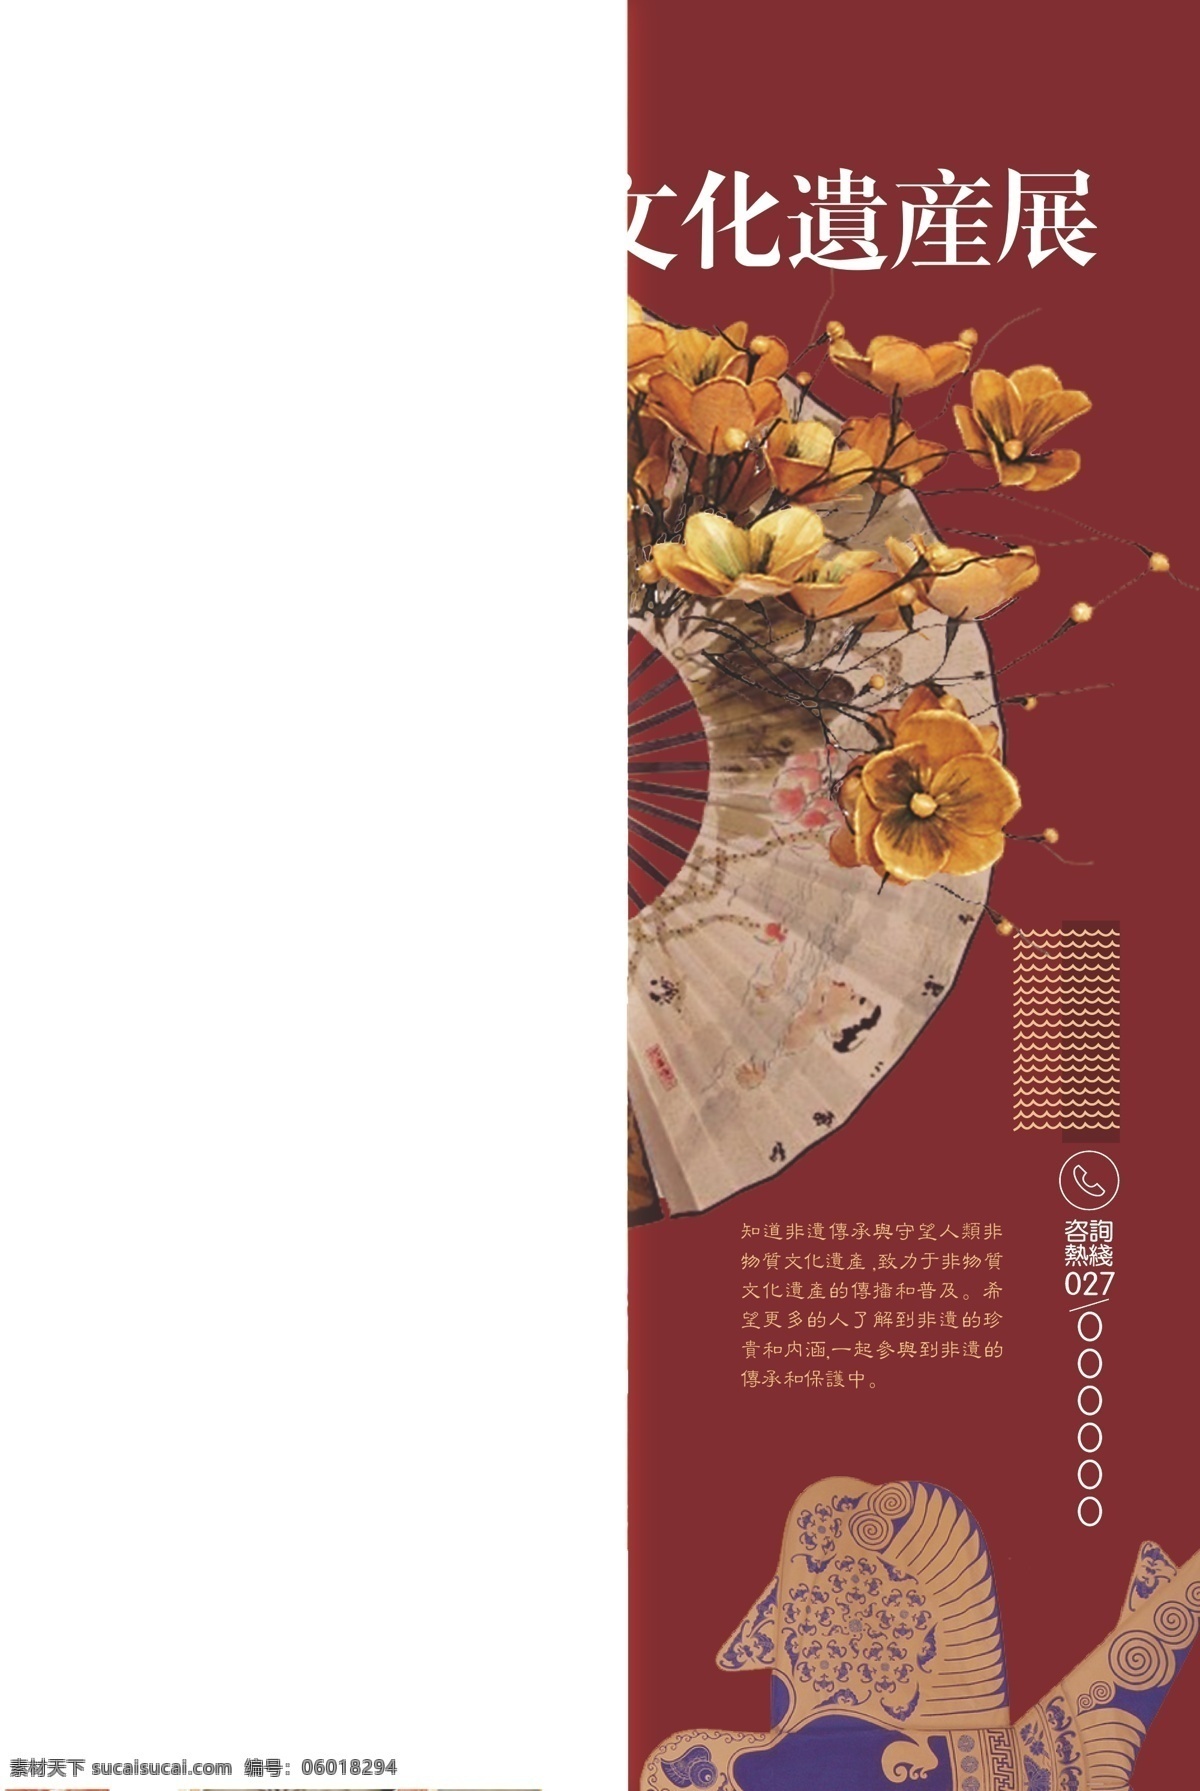 非遗文化海报 非遗 文化 中国风 古典 传统 艺术 扁平化设计 卡通 海报